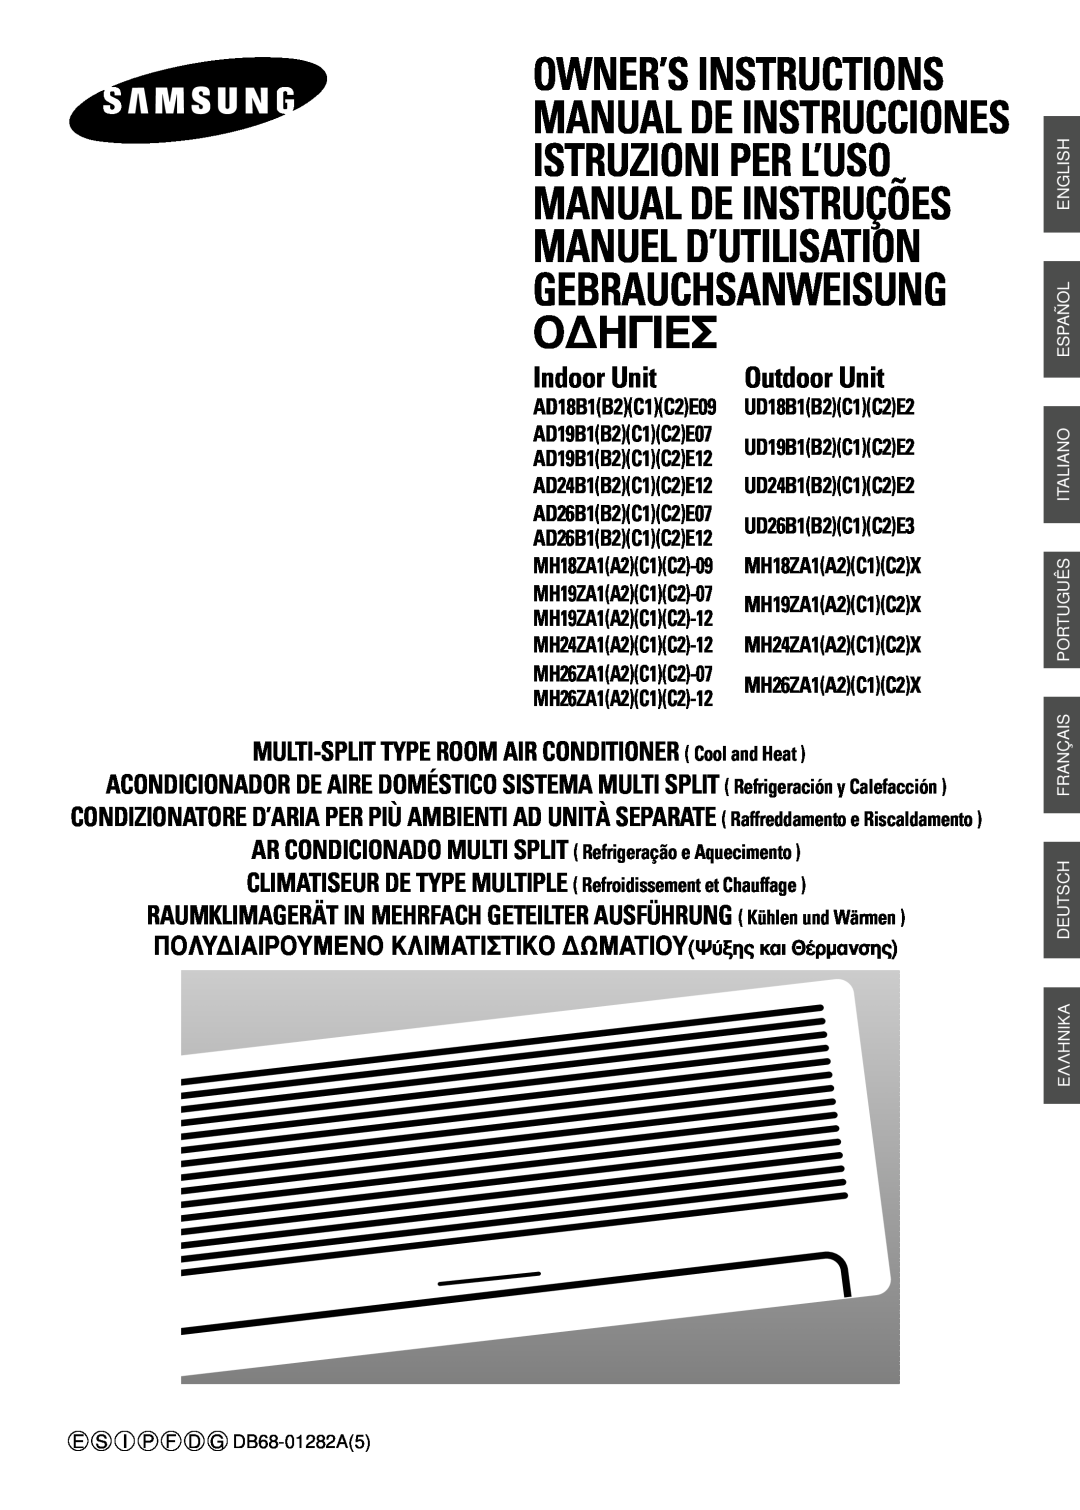 Samsung AD24B1(B2)(C1)(C2)E12 manuel dutilisation Indoor Unit, Manual De Instrucciones Istruzioni Per L’Uso, O¢Hie 